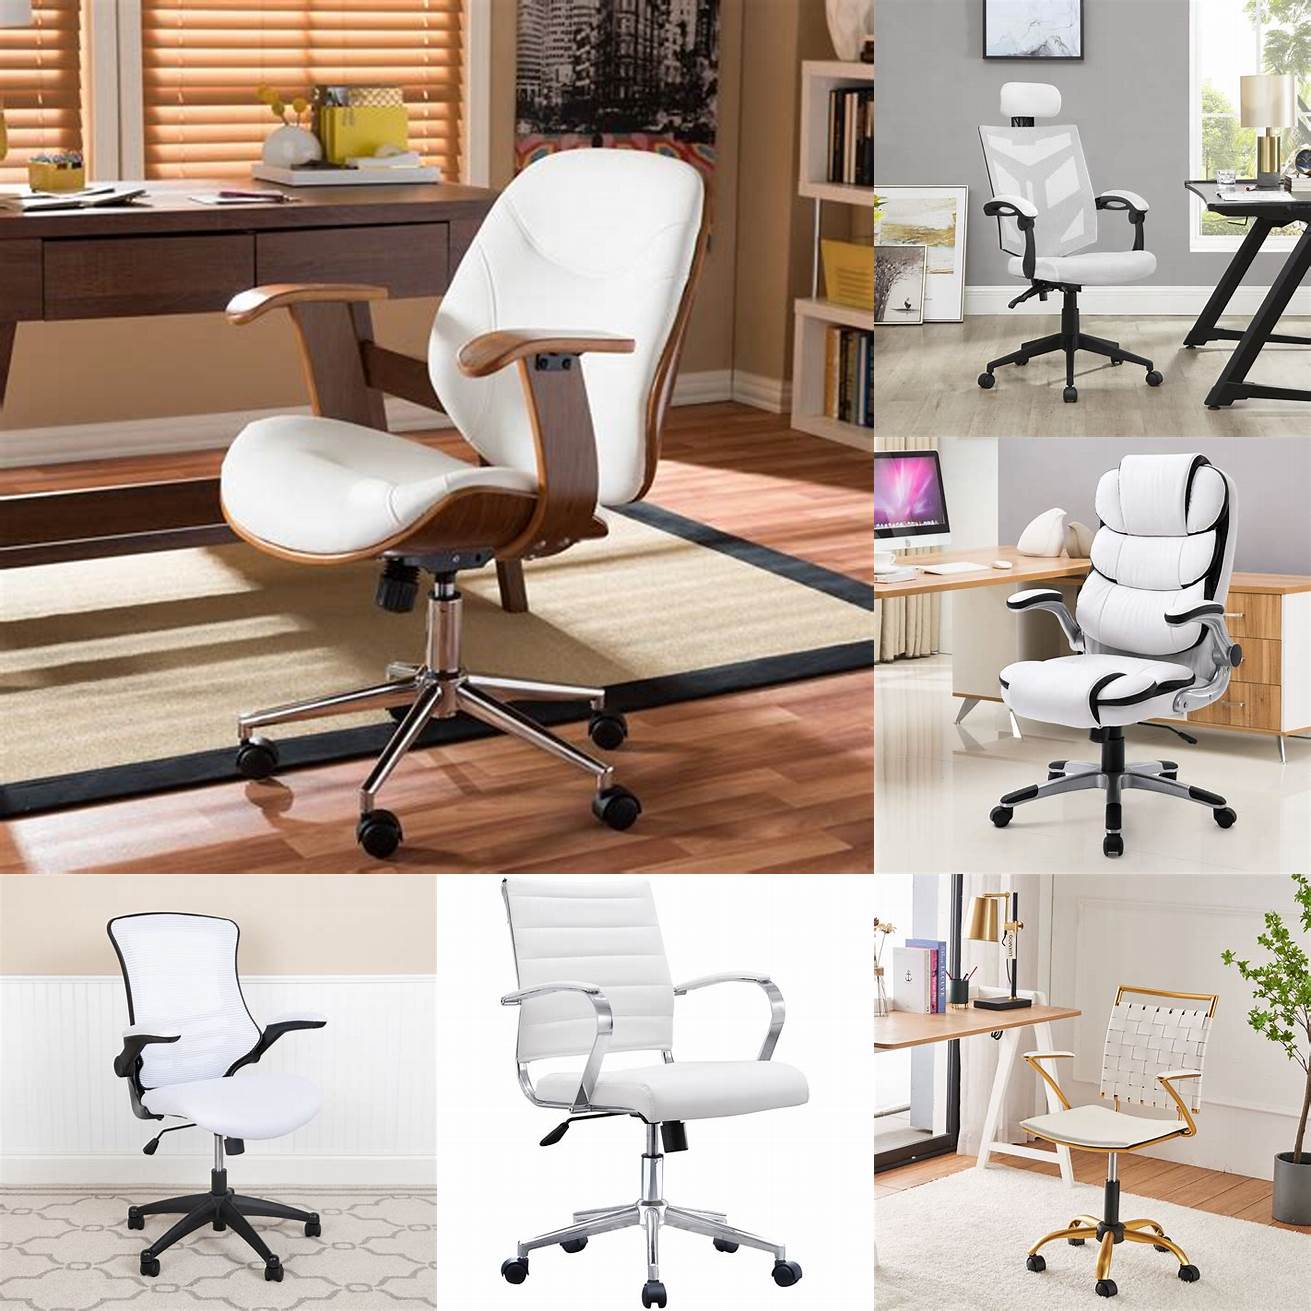 White ergonomic chair